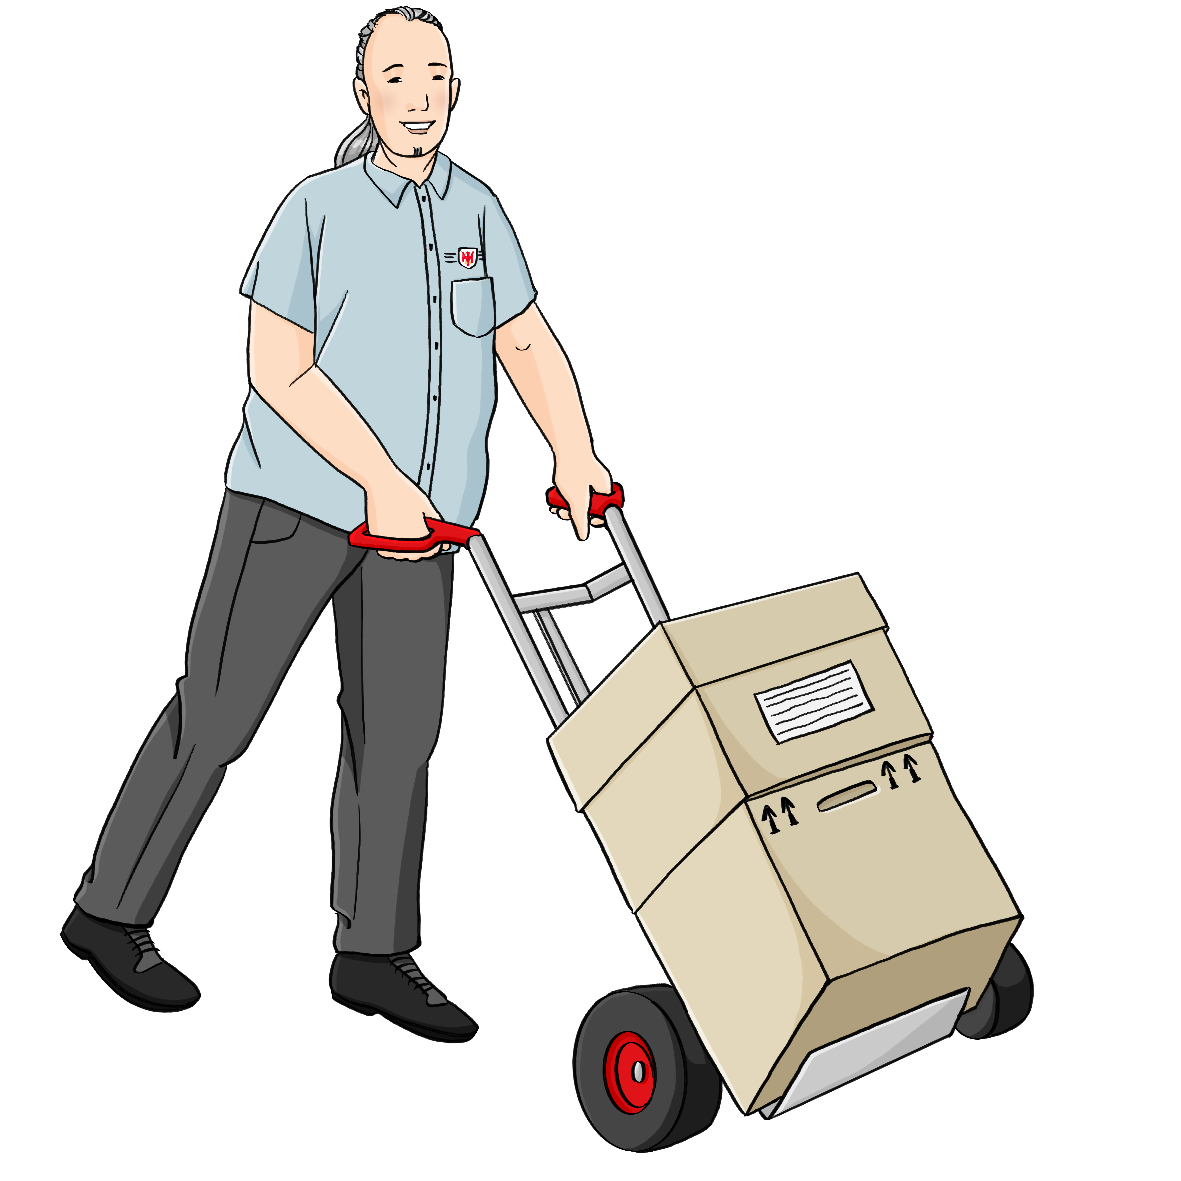 Ein Mann mit grauer Hose und blauem Hemd schiebt eine Sackkarre mit Kartons.